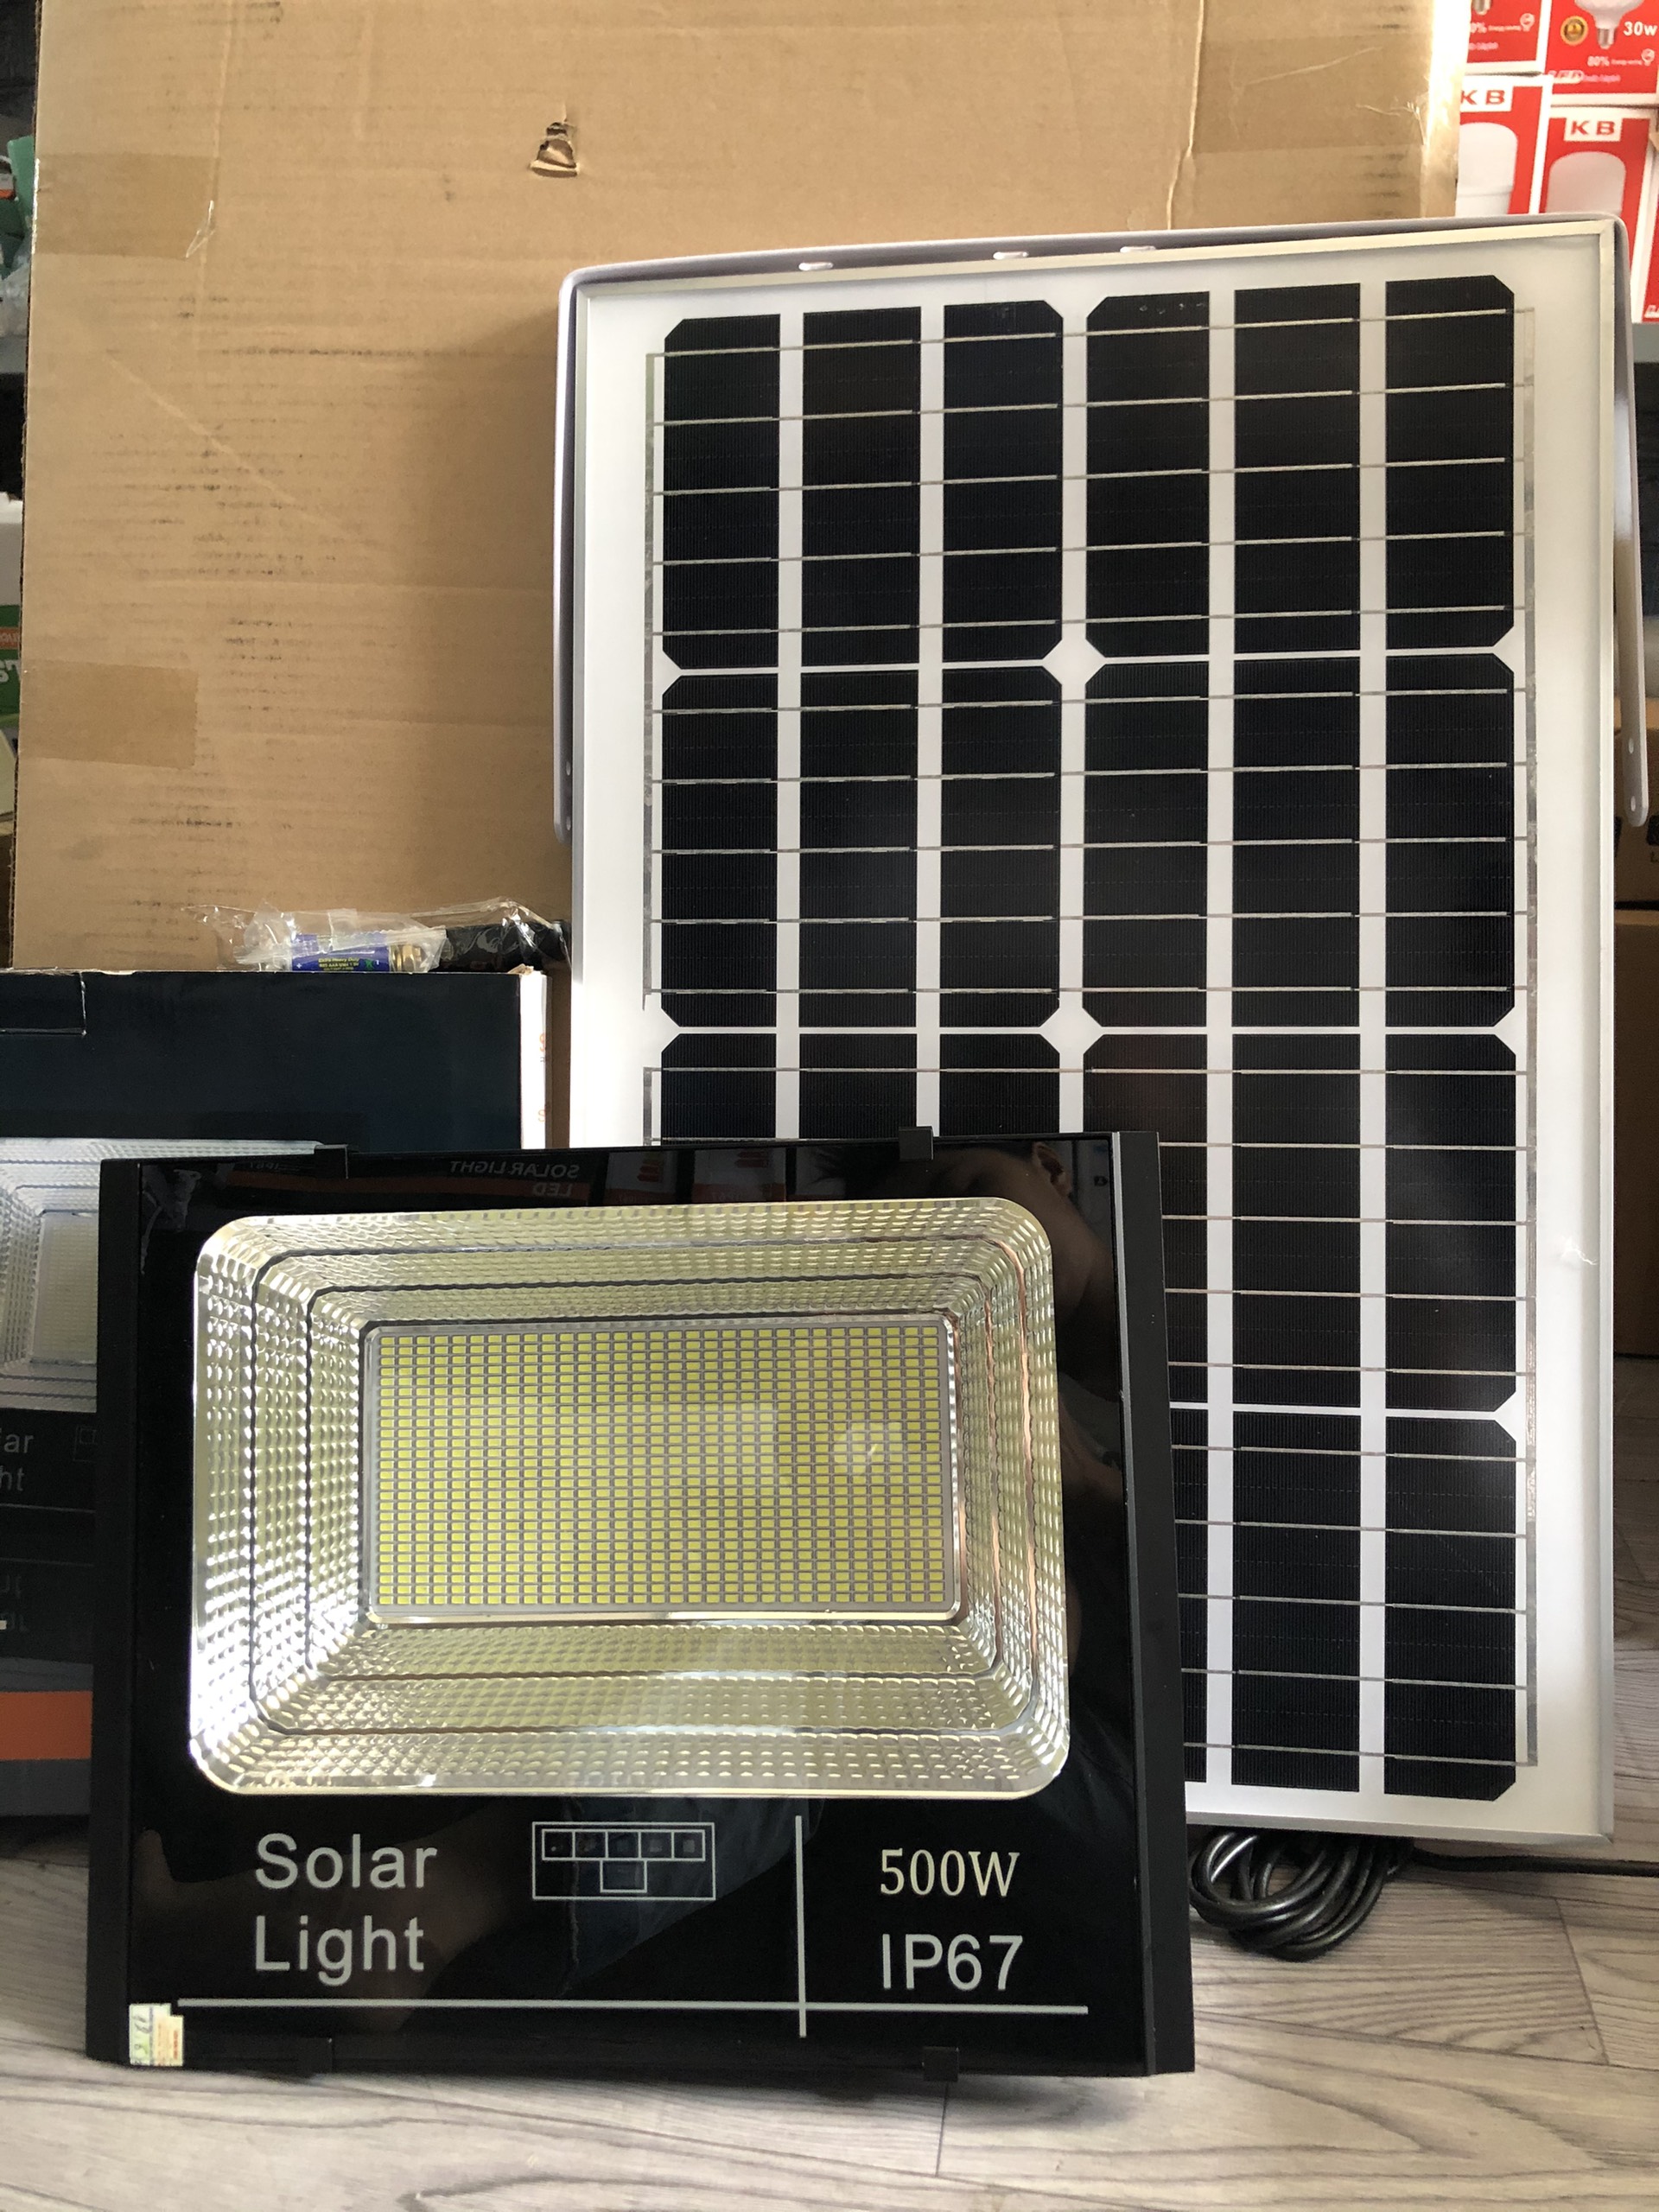 Đèn pha led năng lượng mặt trời  500W cao cấp siêu sáng  có báo pin chống nước tuyệt đối sử dụng trong nhà và ngoài sân đều tốt bảo hành sản phẩm 2 năm